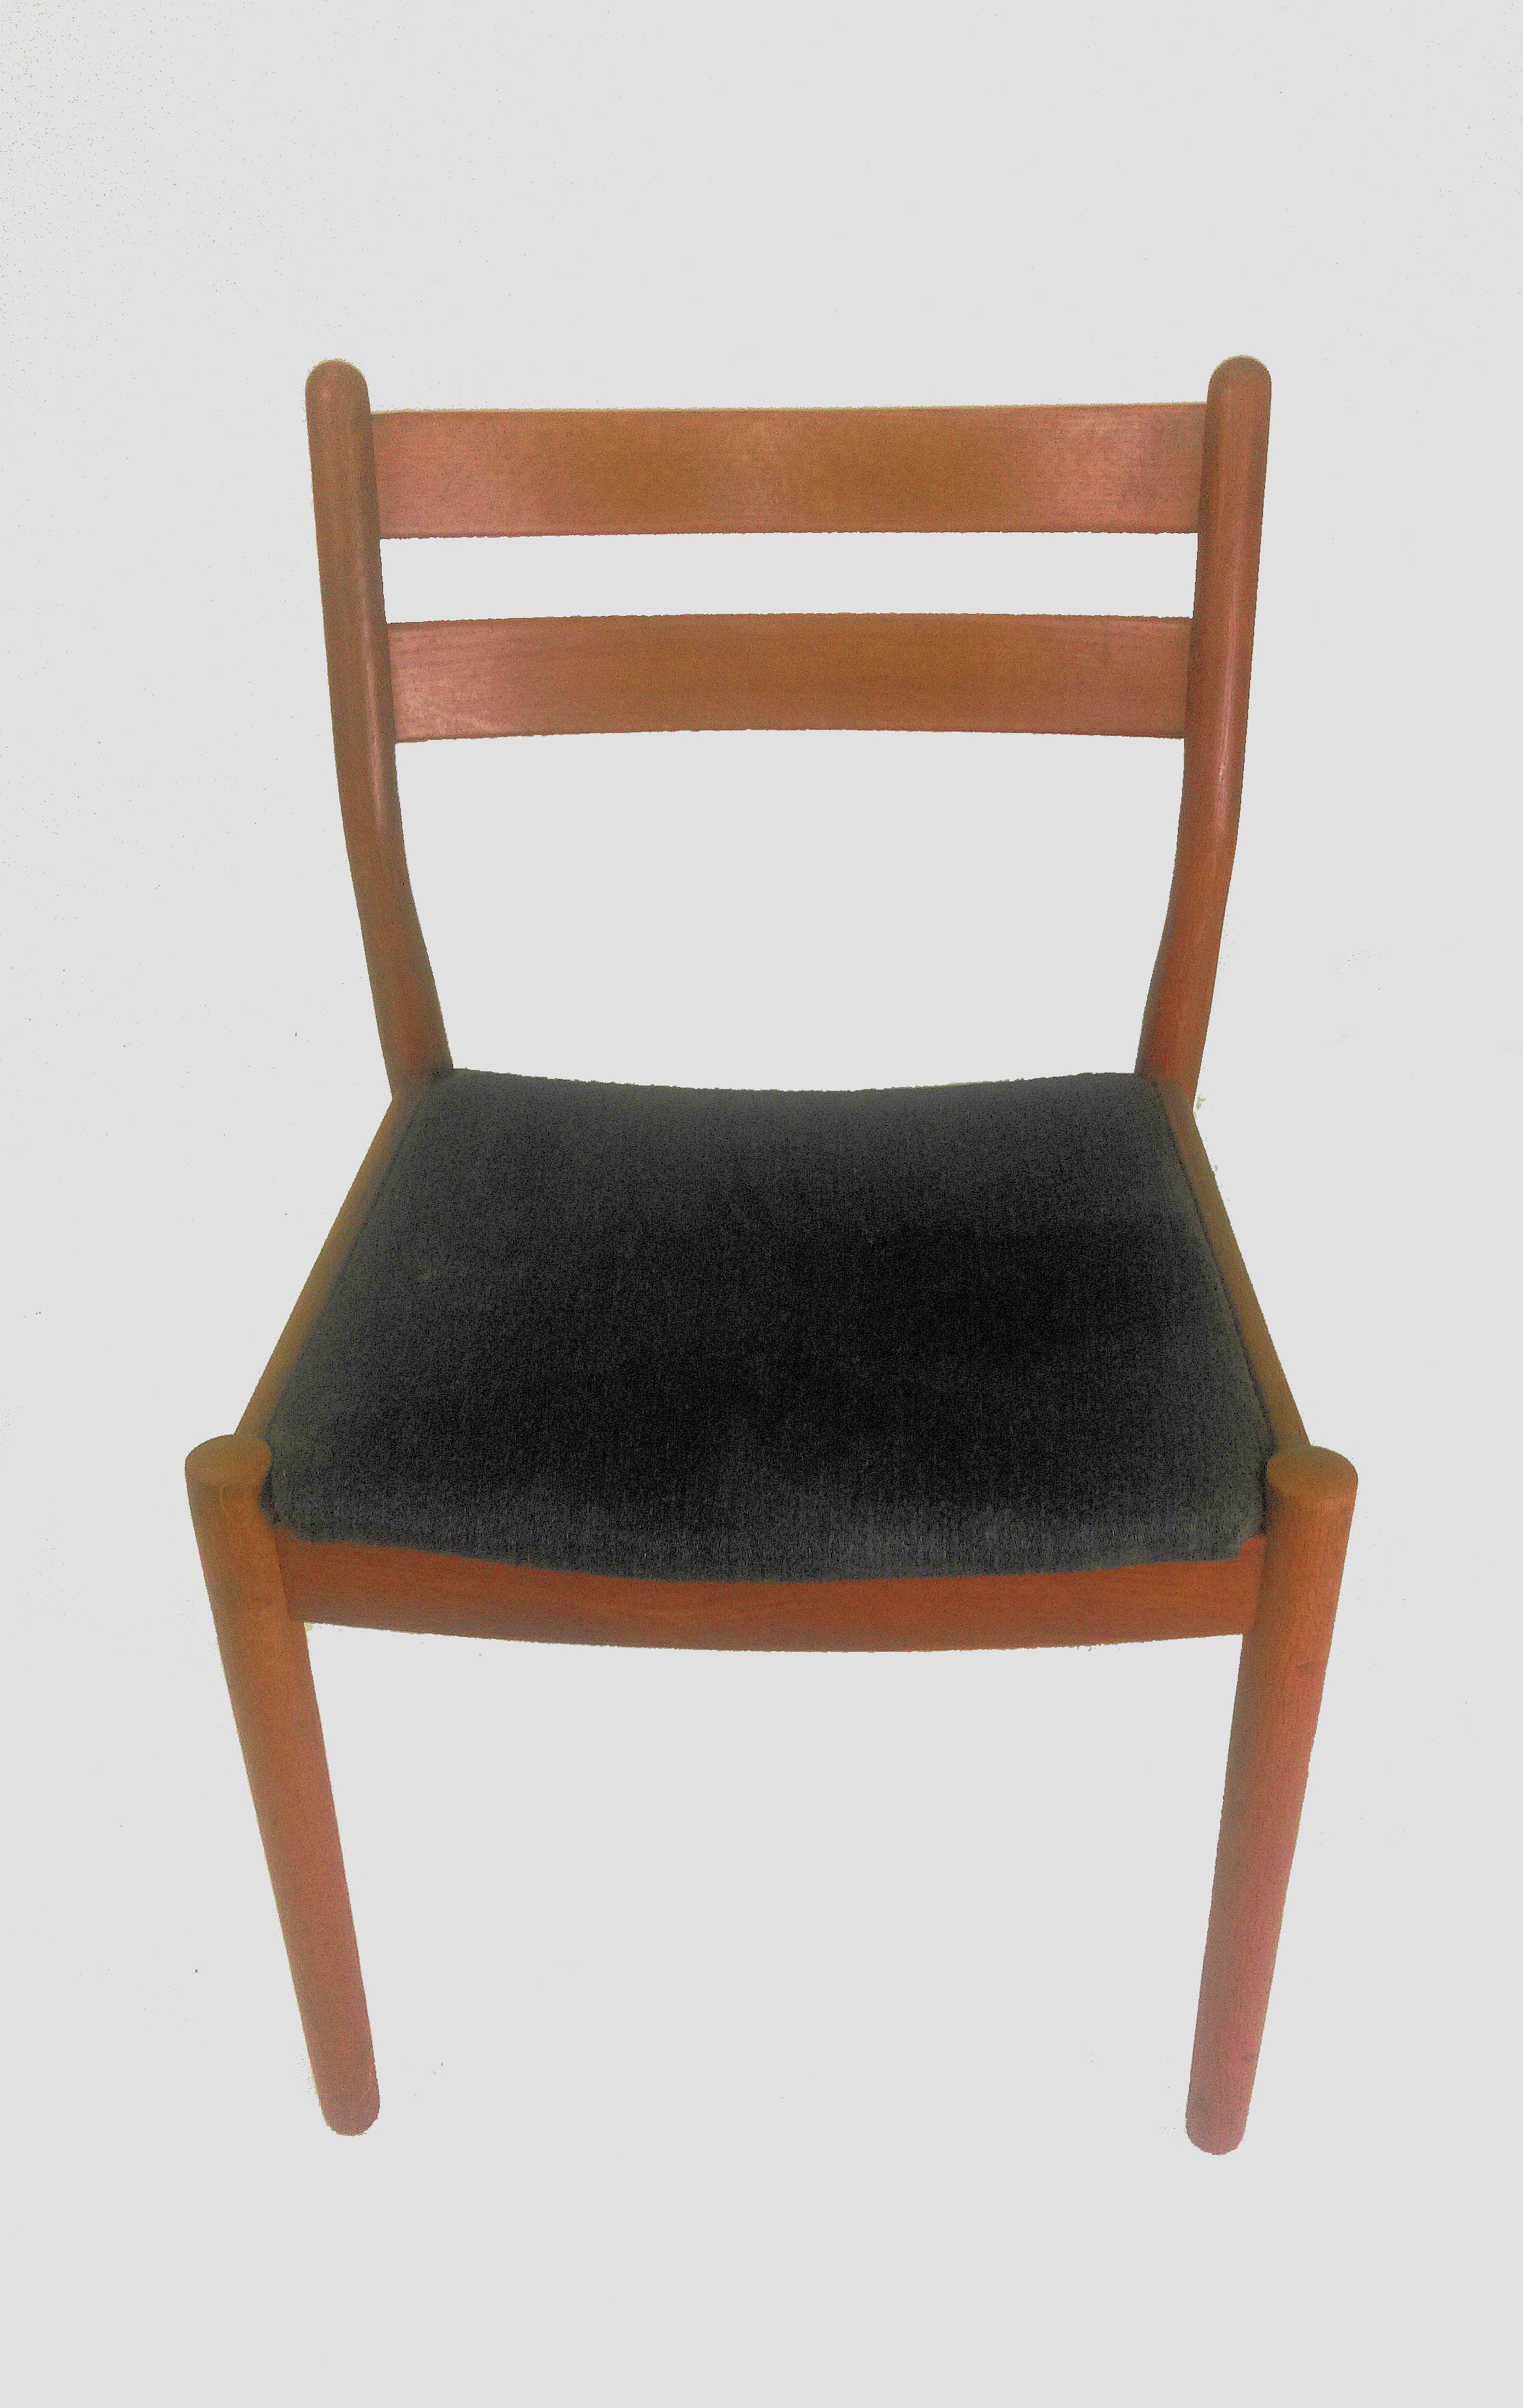 6 Esszimmerstühle mit Leiterlehne aus Eiche, entworfen von Poul Volther für FDB Møbler - Sorø Stolefabrik.

Die Stühle wurden von unserem Schreiner überprüft und aufgearbeitet, um sicherzustellen, dass sie in sehr gutem Zustand mit nur minimalen